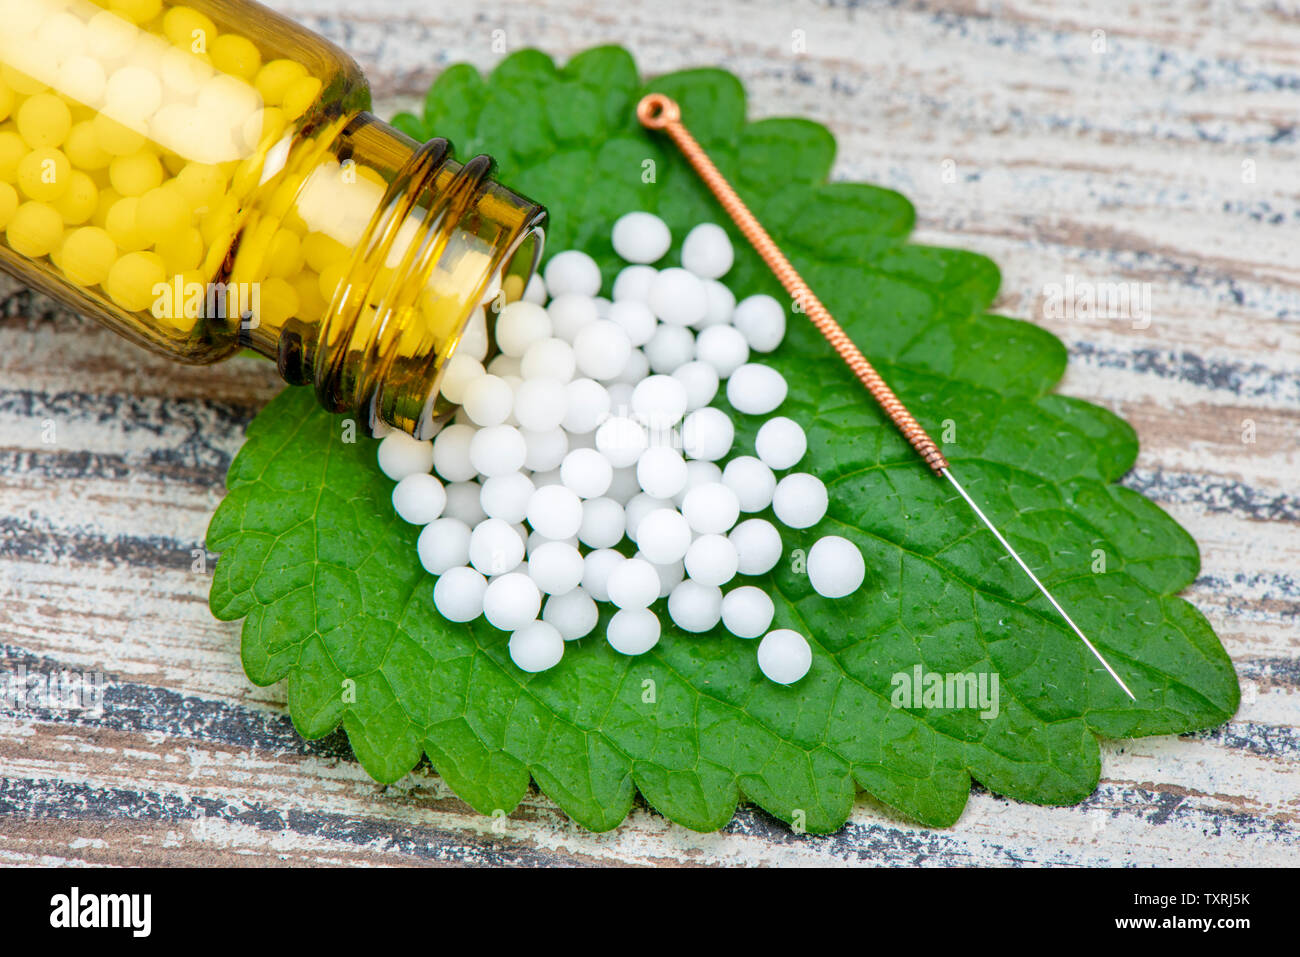 La medicina alternativa con homeopatía y acupuntura Foto de stock